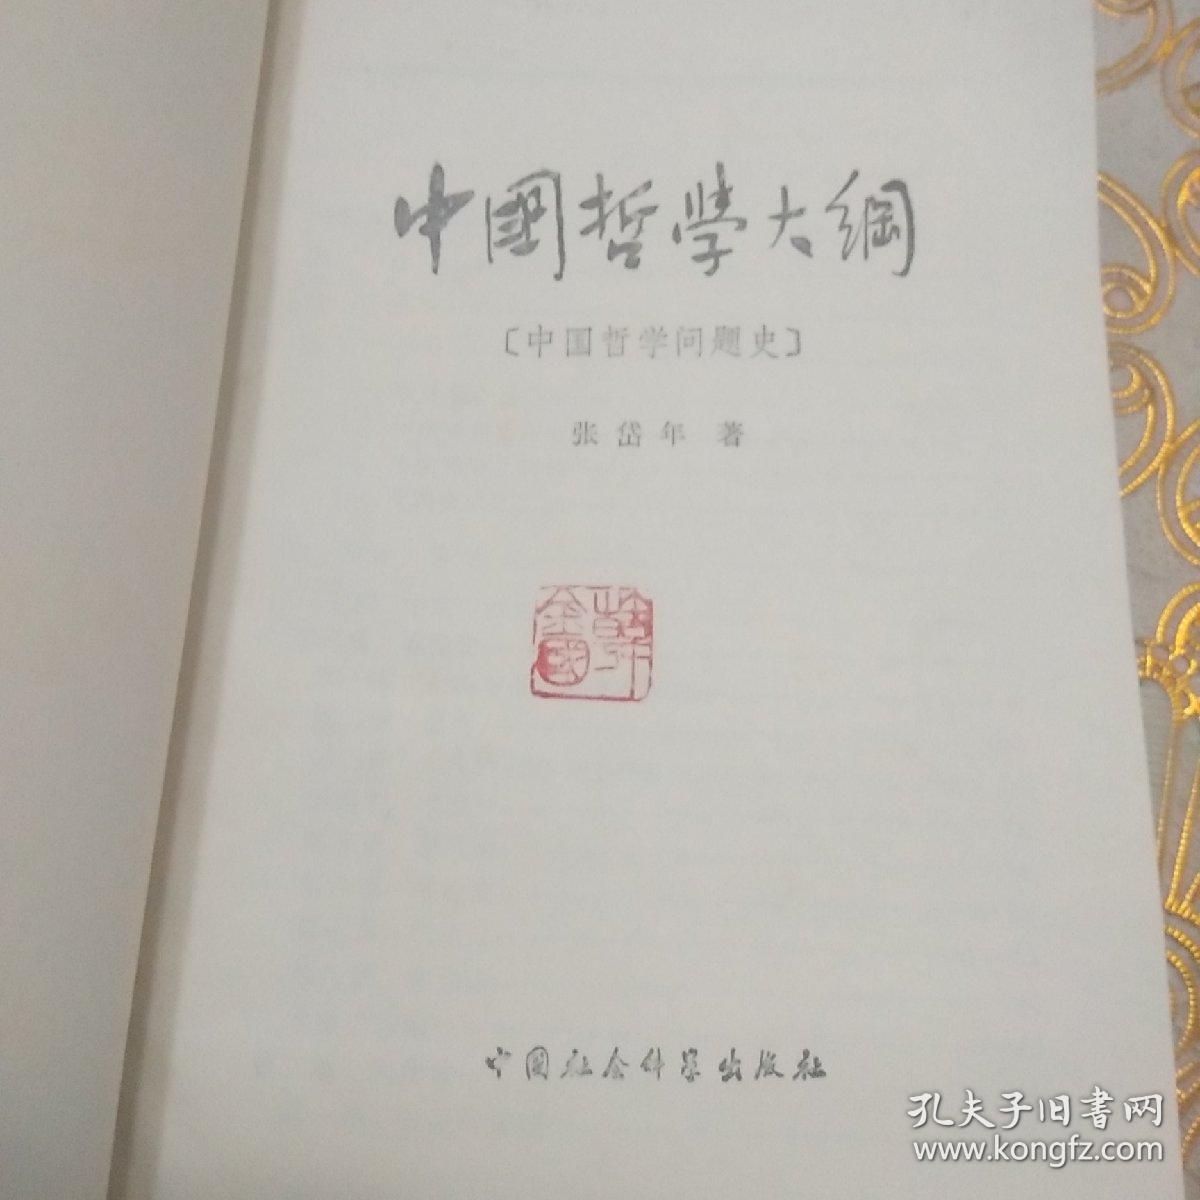 中国哲学大纲:中国哲学问题史